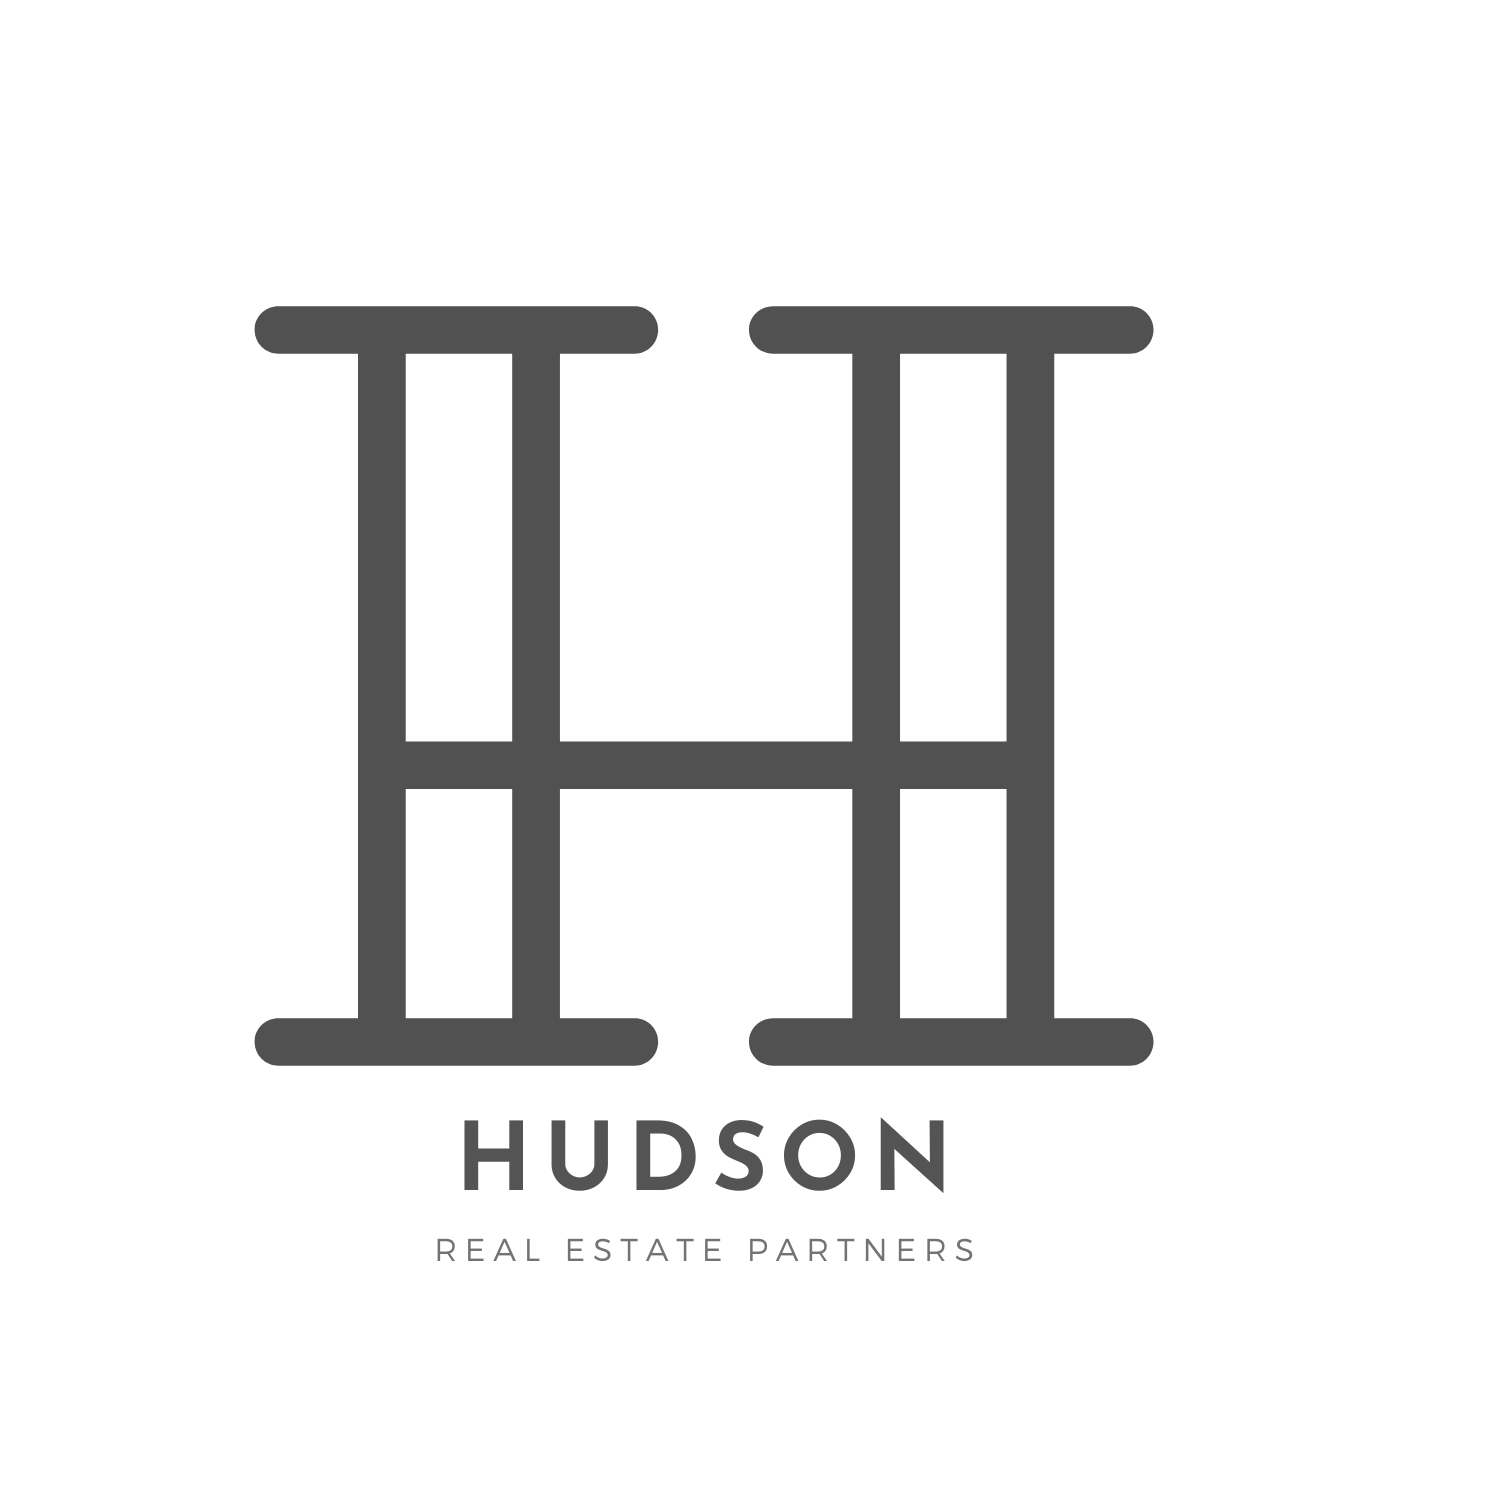 Hudson Real Estate Partners